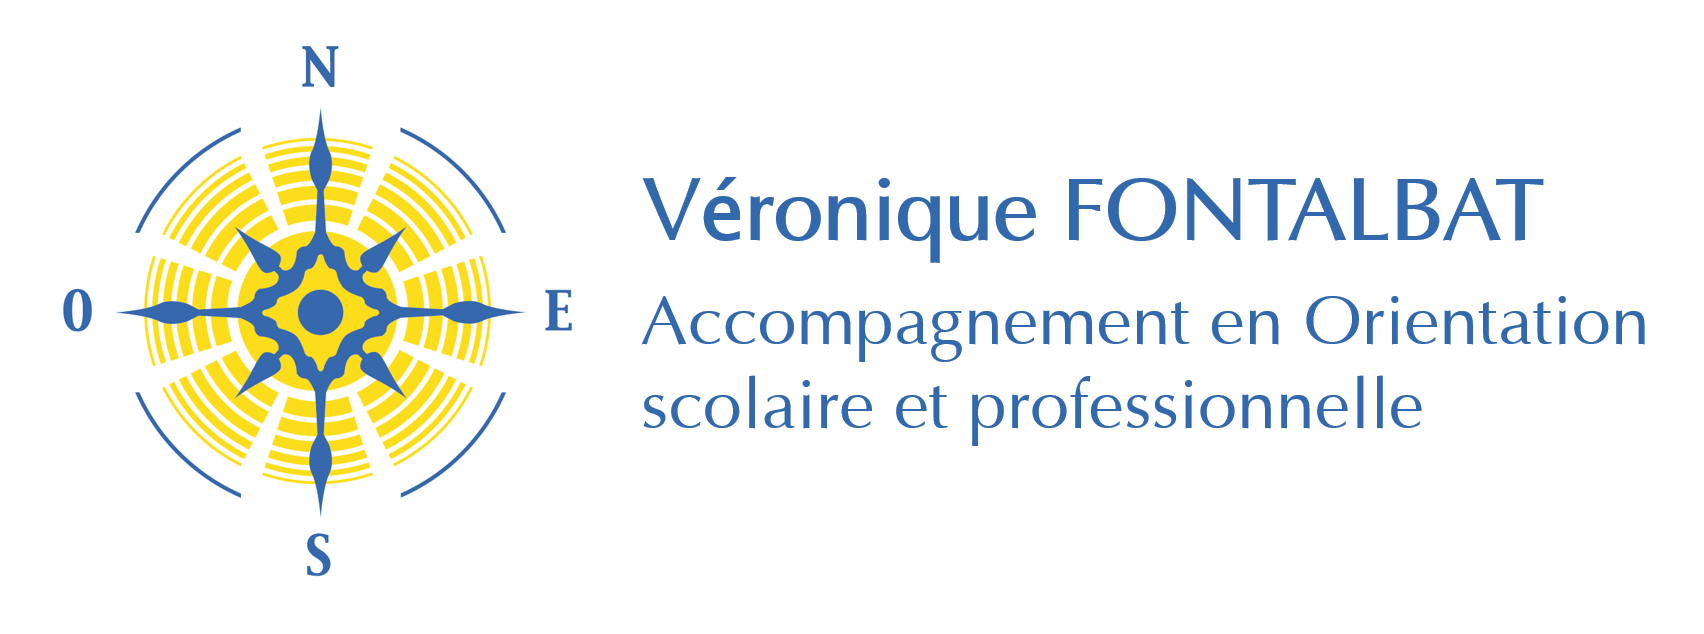 Veronique Fontalbat Orientation